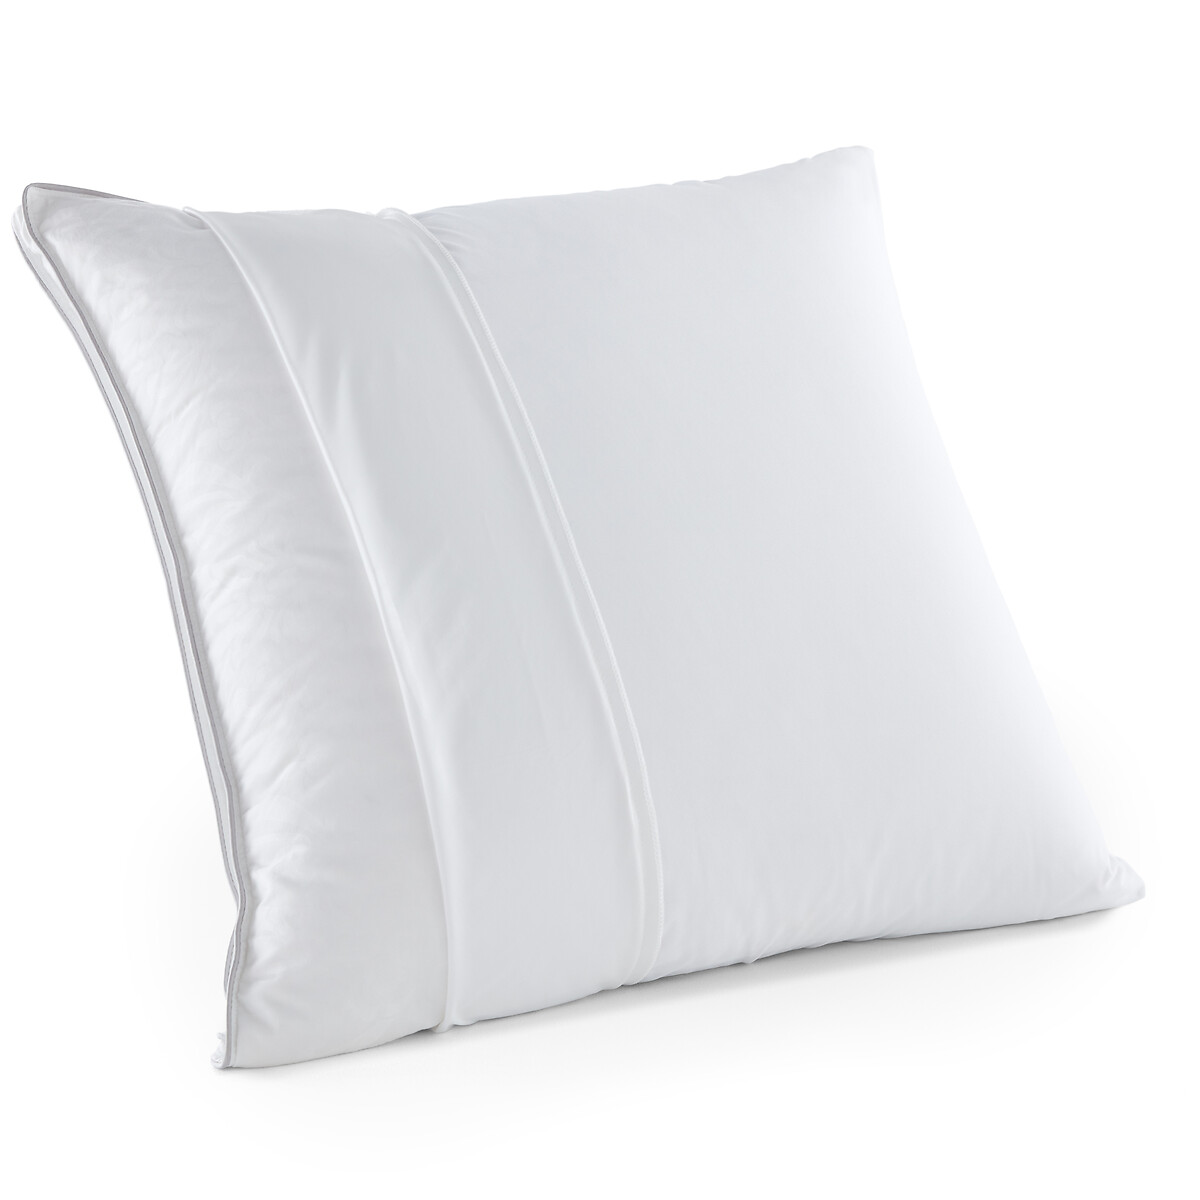 Комплект из 2 наволочек на подушку из джерси 100 хлопок 50 x 70 см белый 100 horizon 63 x 63 см серый